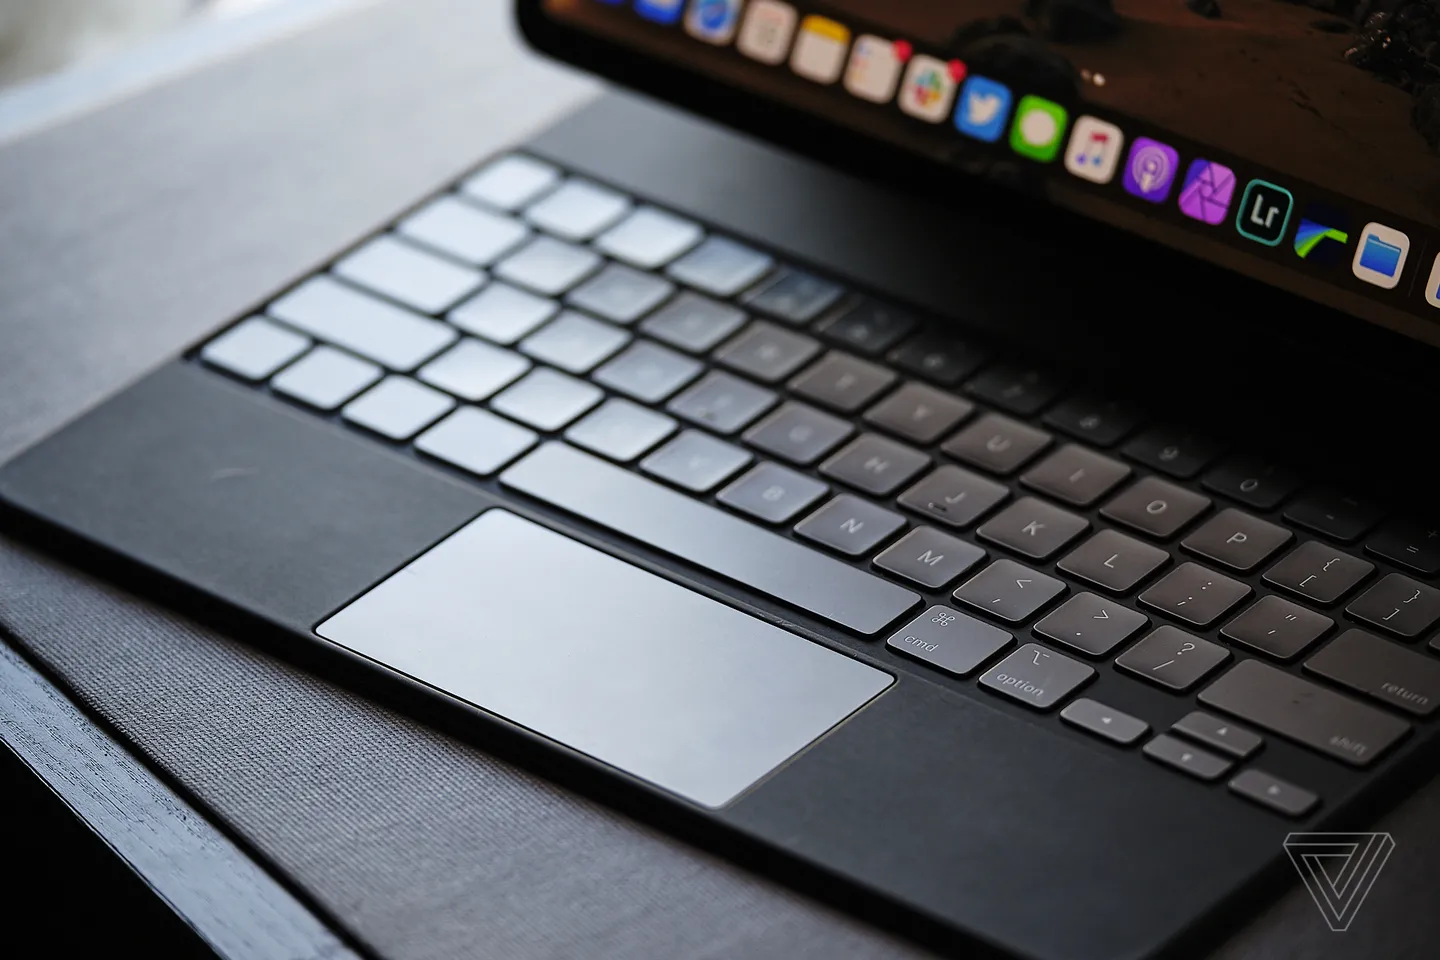 新的 iPad 可能会配备更坚固的铝制妙控键盘